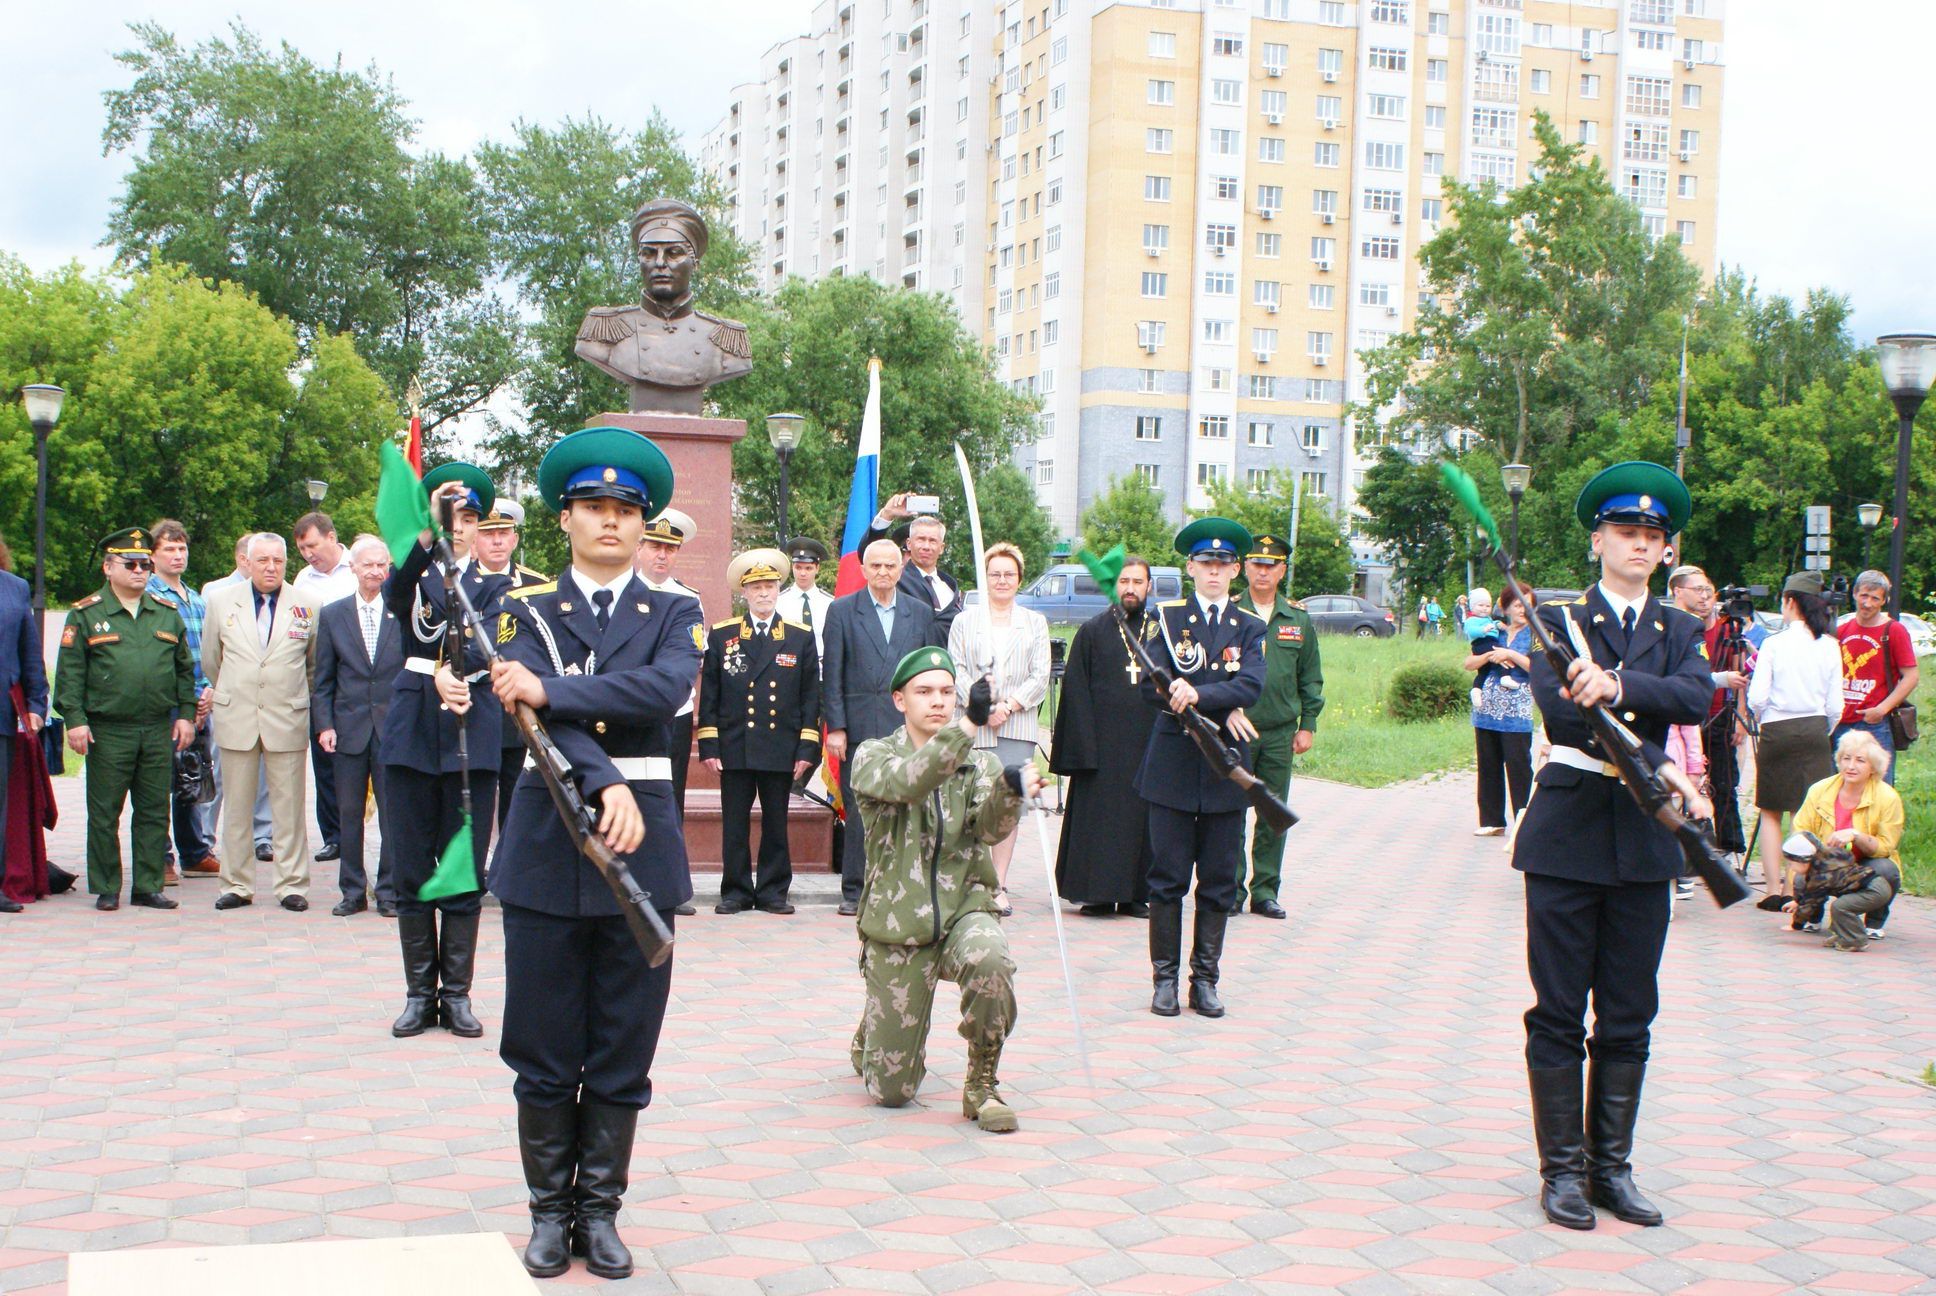 Нижегородцы отметили 125-летие со дня рождения адмирала Нахимова - фото 1